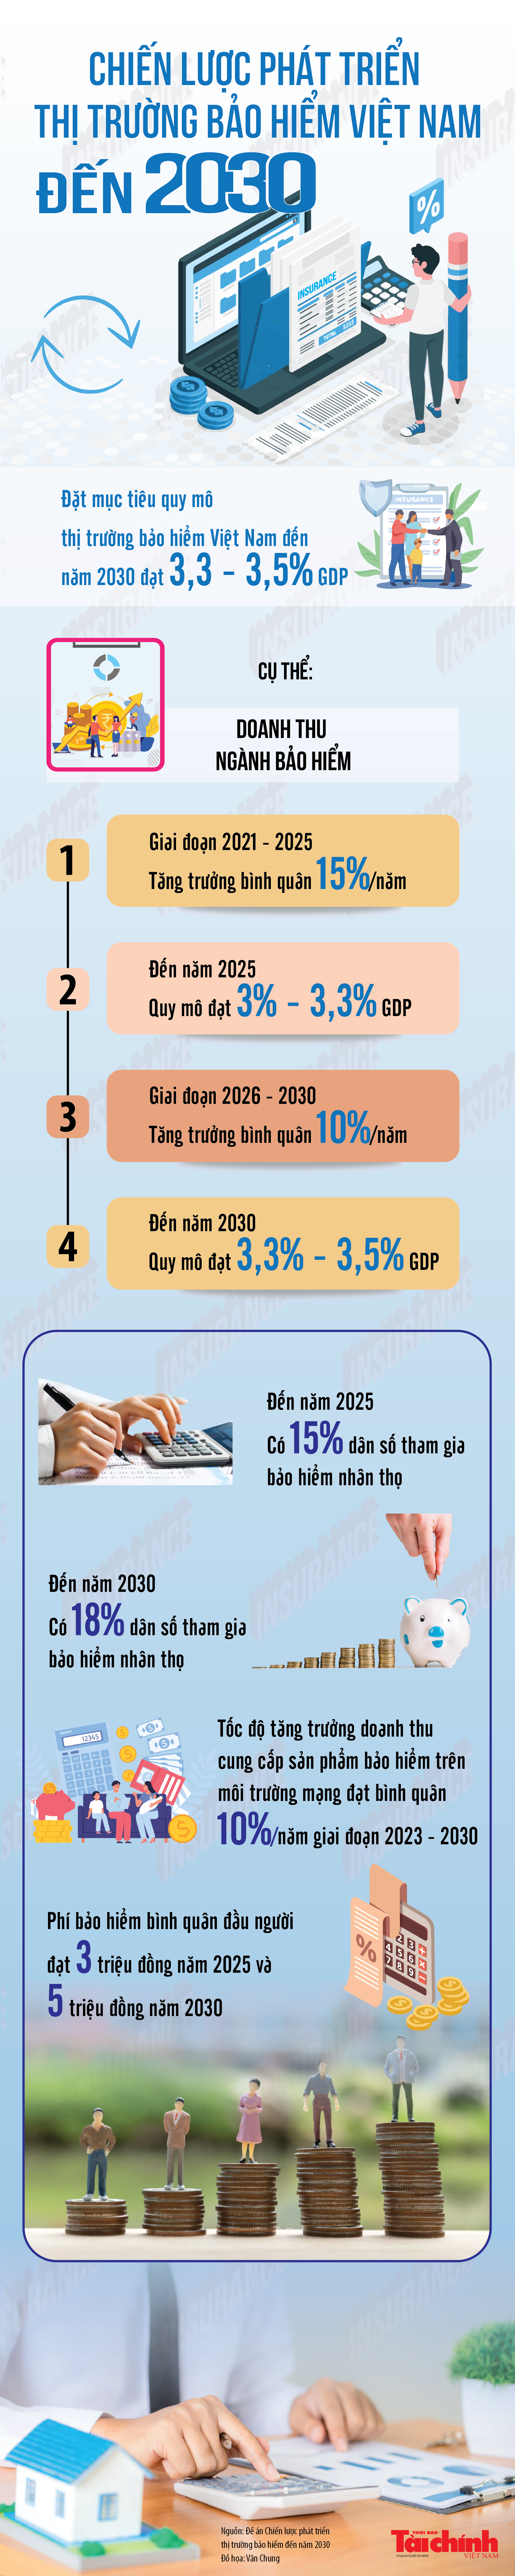 Inforgraphic: Chiến lược phát triển thị trường bảo hiểm Việt Nam đến năm 2030